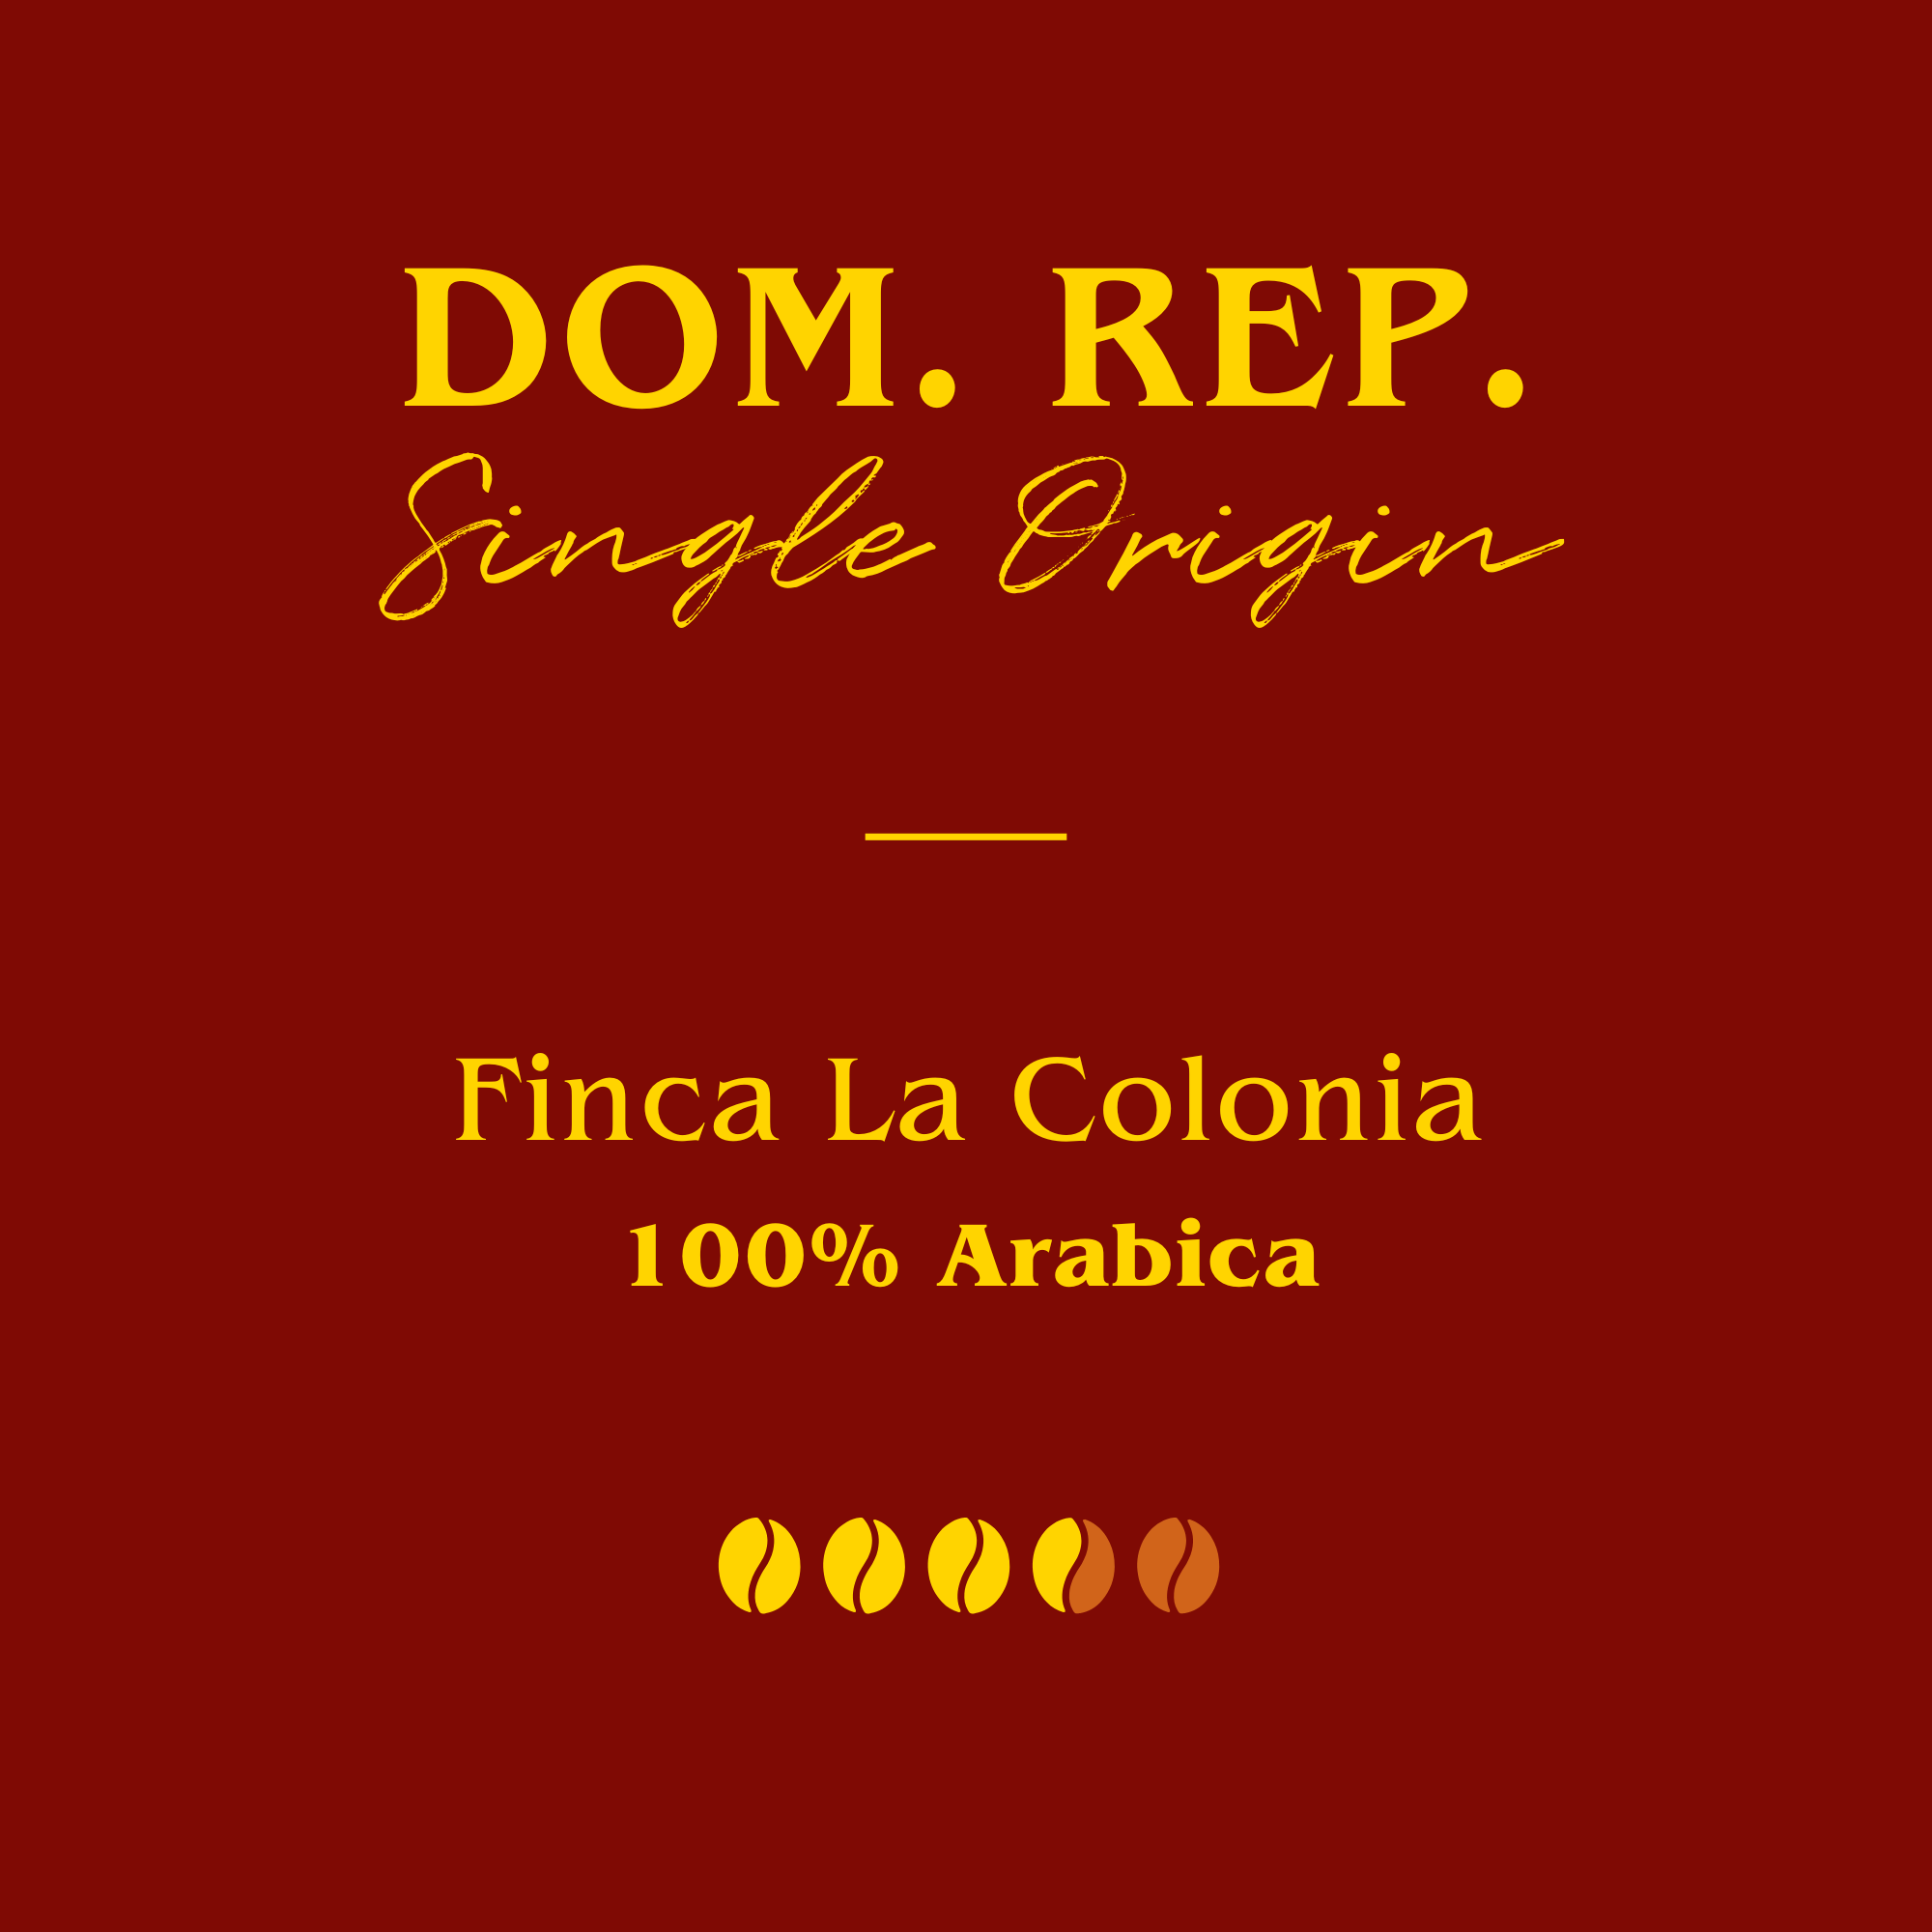 Dominican Republic - Finca La Colonia